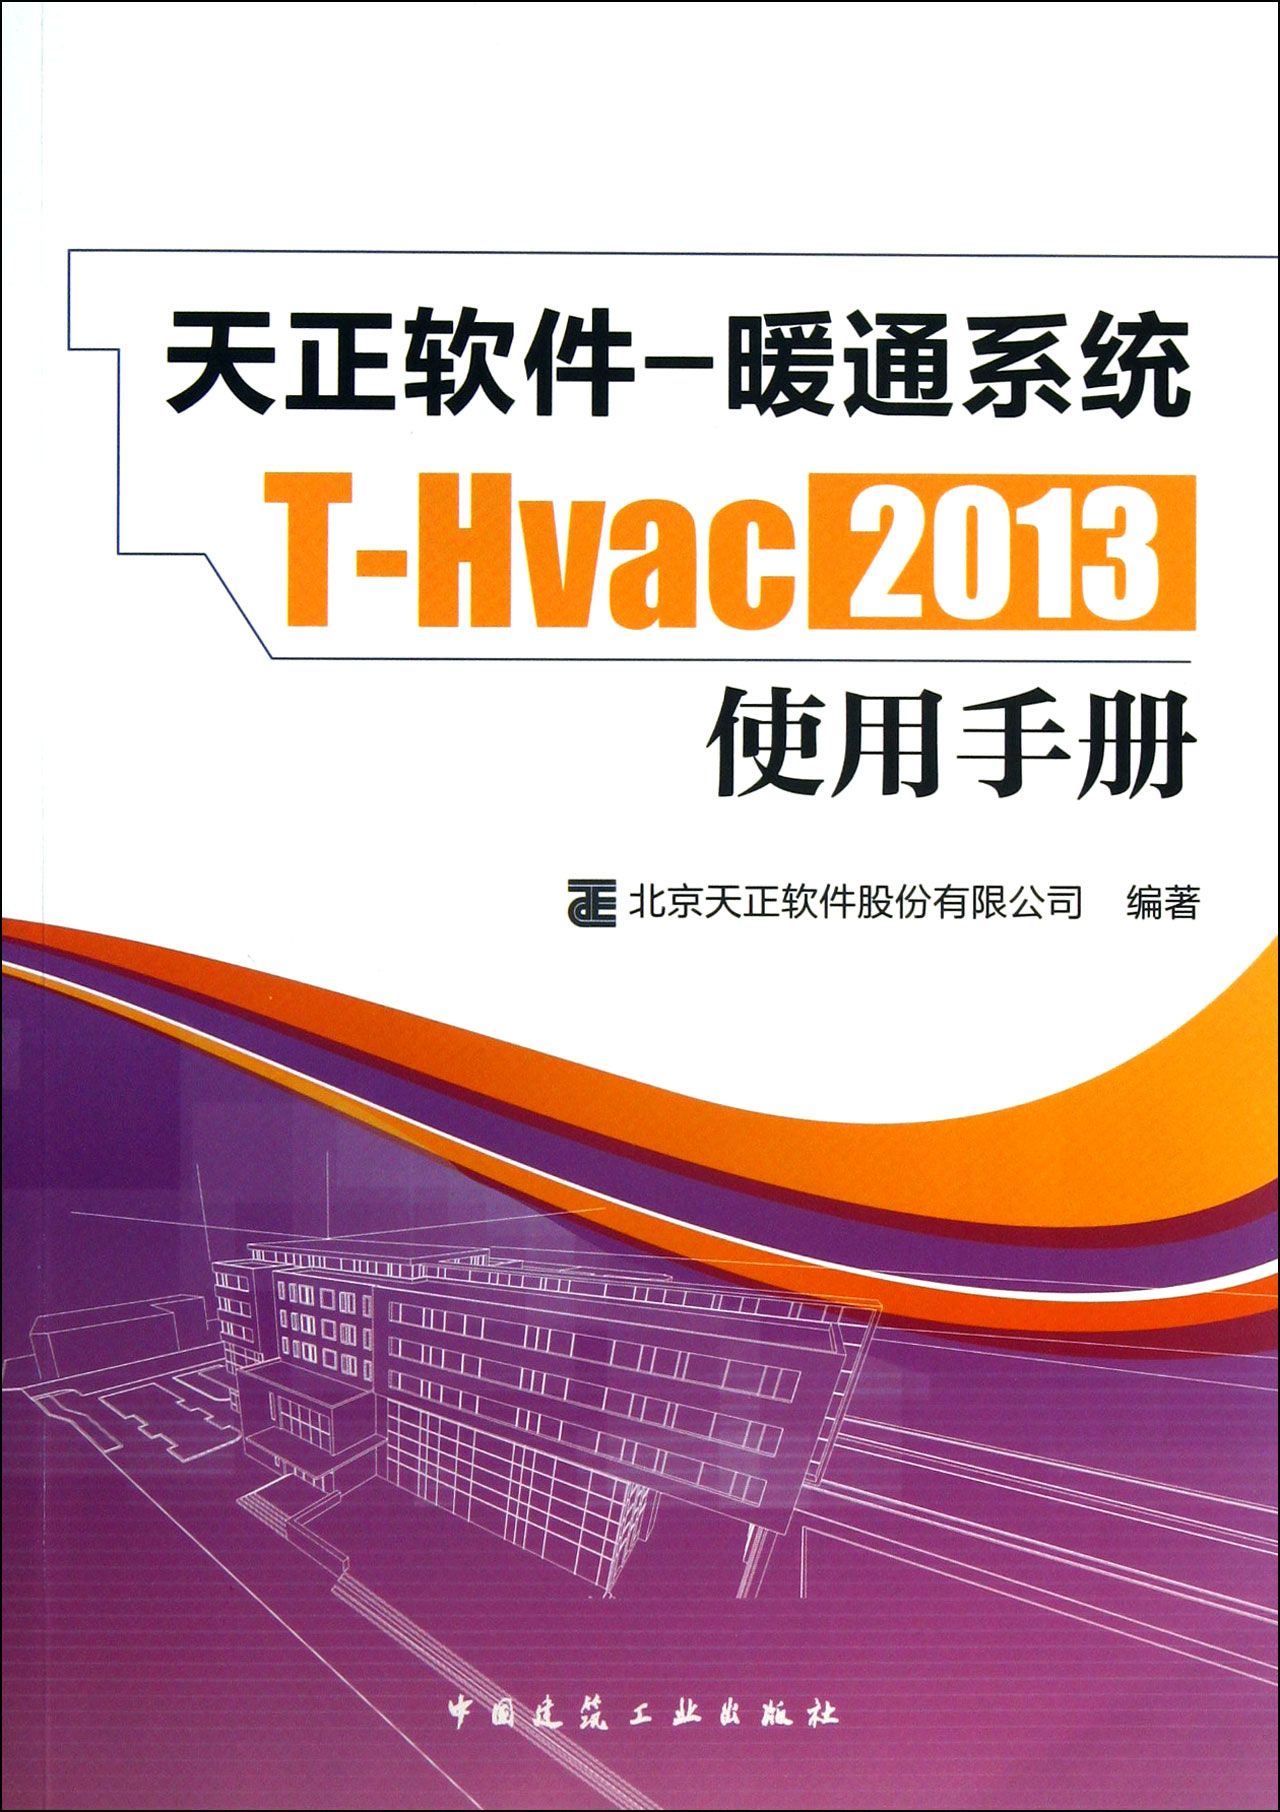 天正软件-暖通系统T-Hvac2013使用手册截图